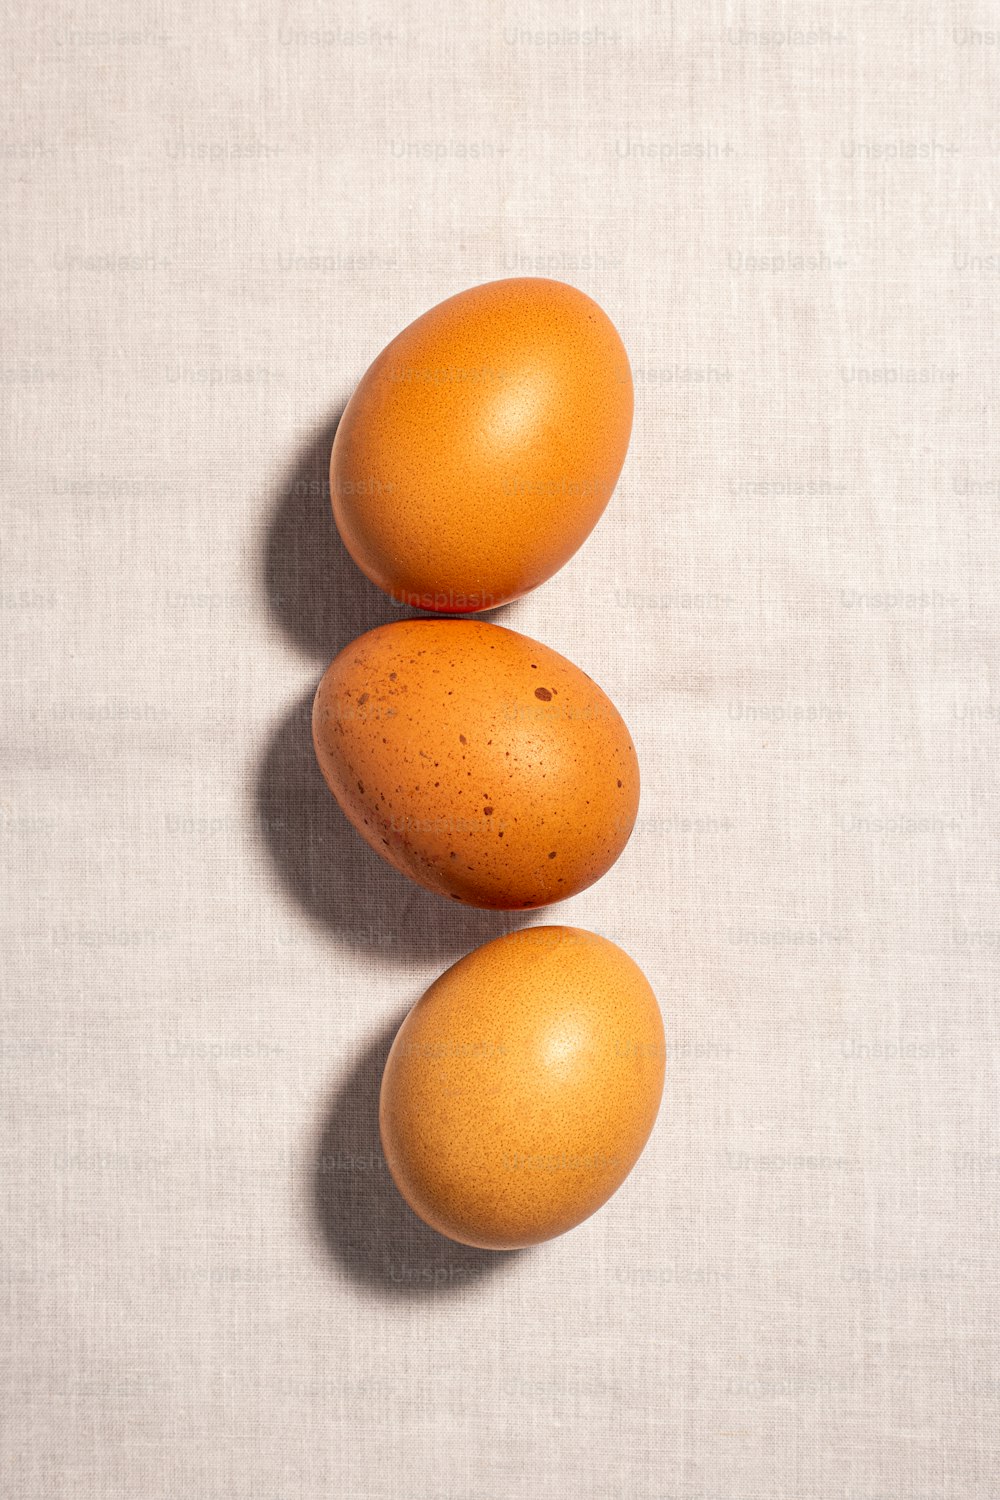 Tre uova marroni sedute una sopra l'altra